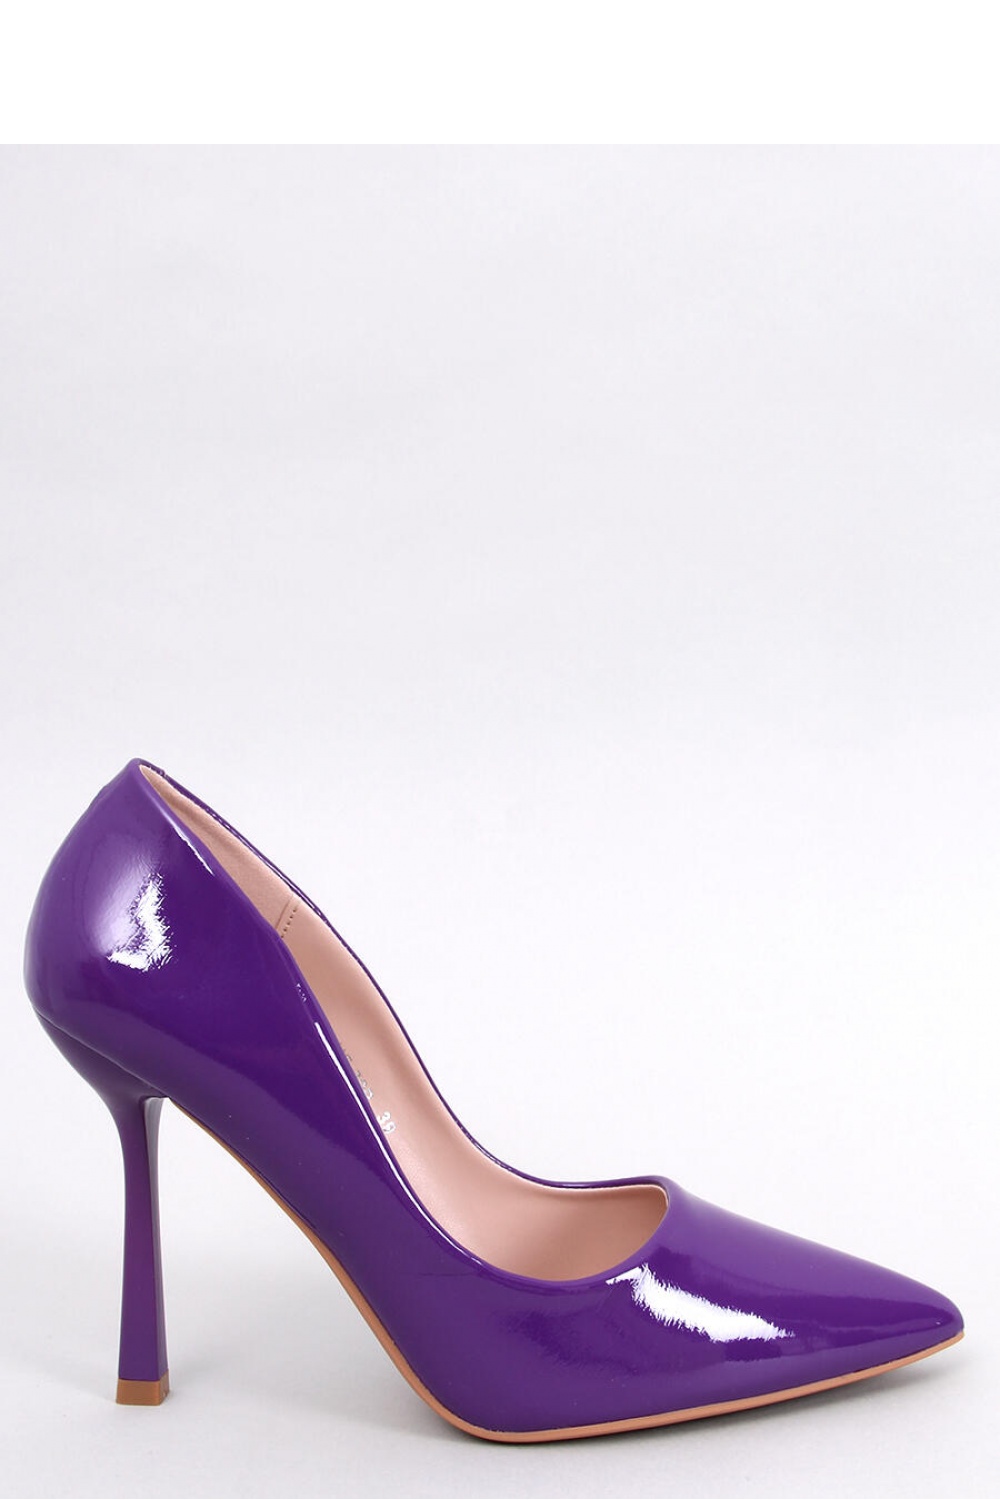 High heels model 181043 Inello